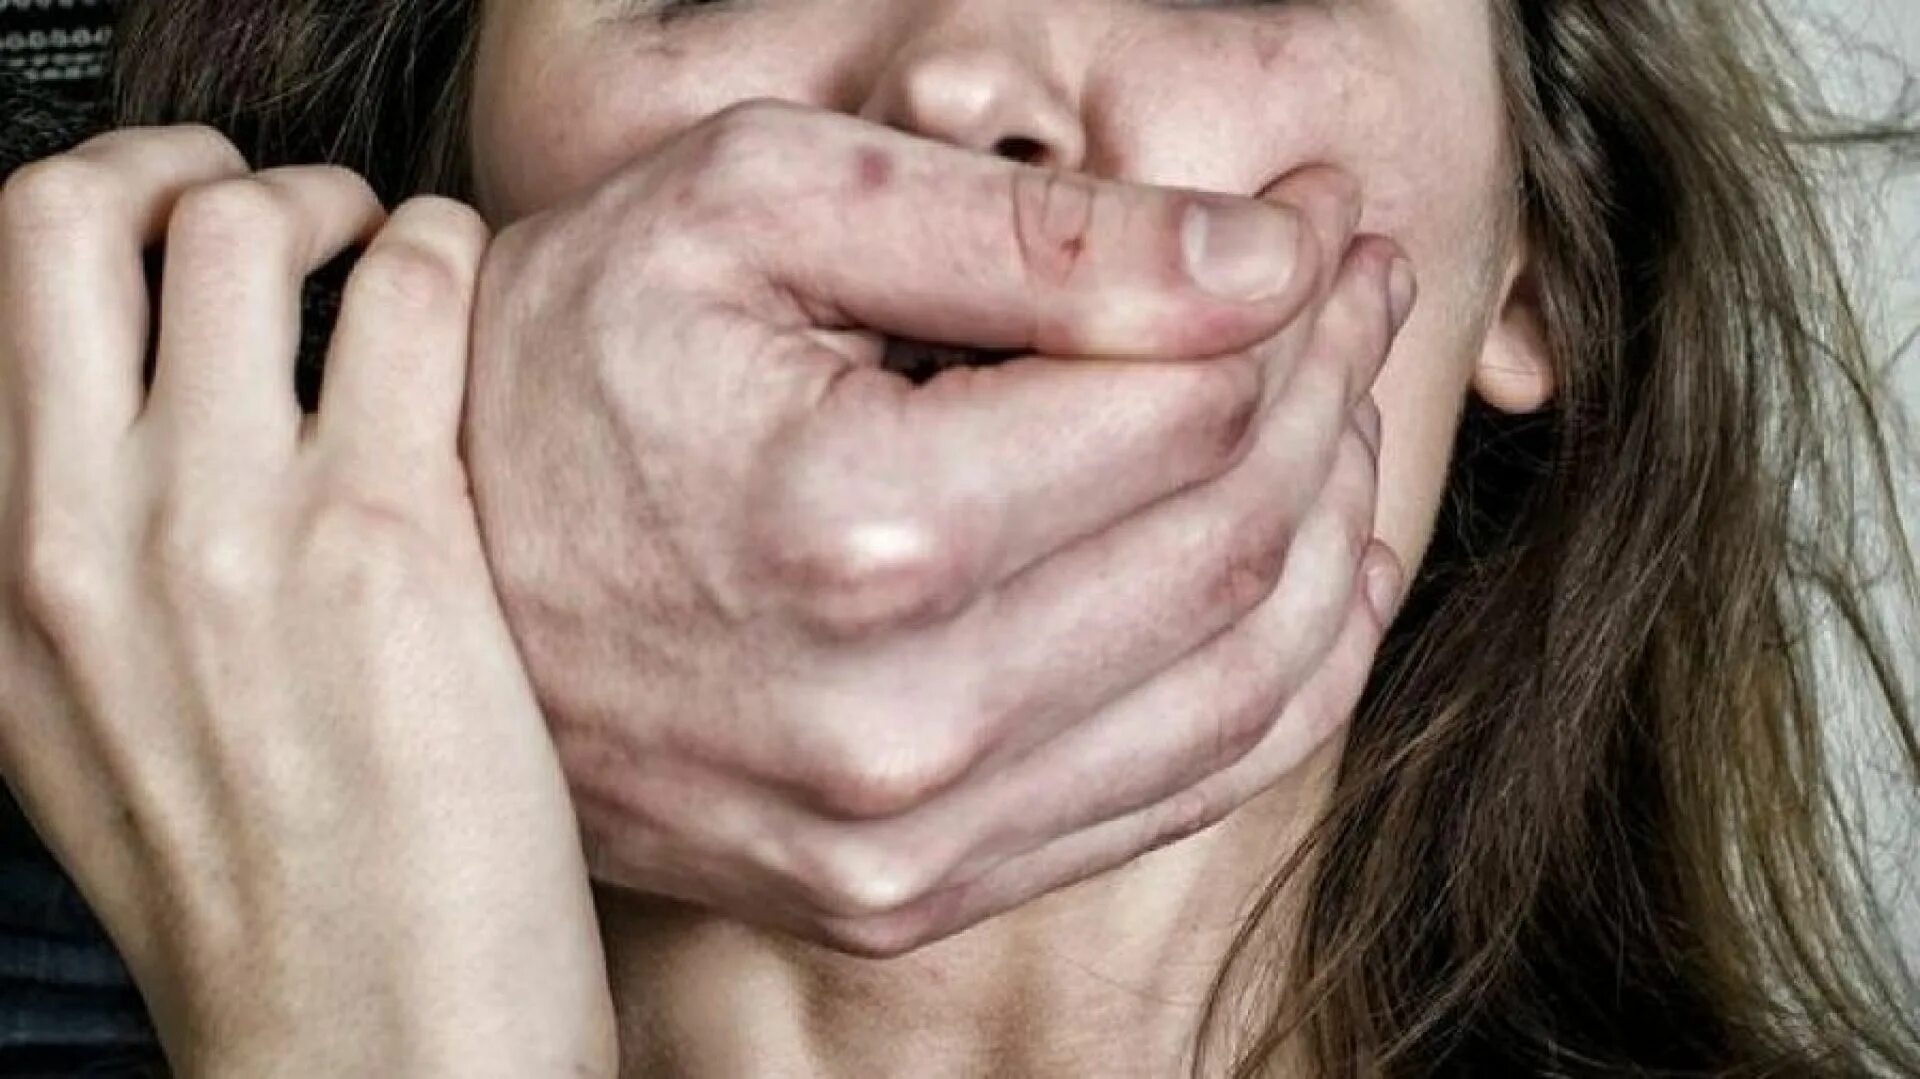 Жена руками и ртом. Мужчина закрывает рот женщине.